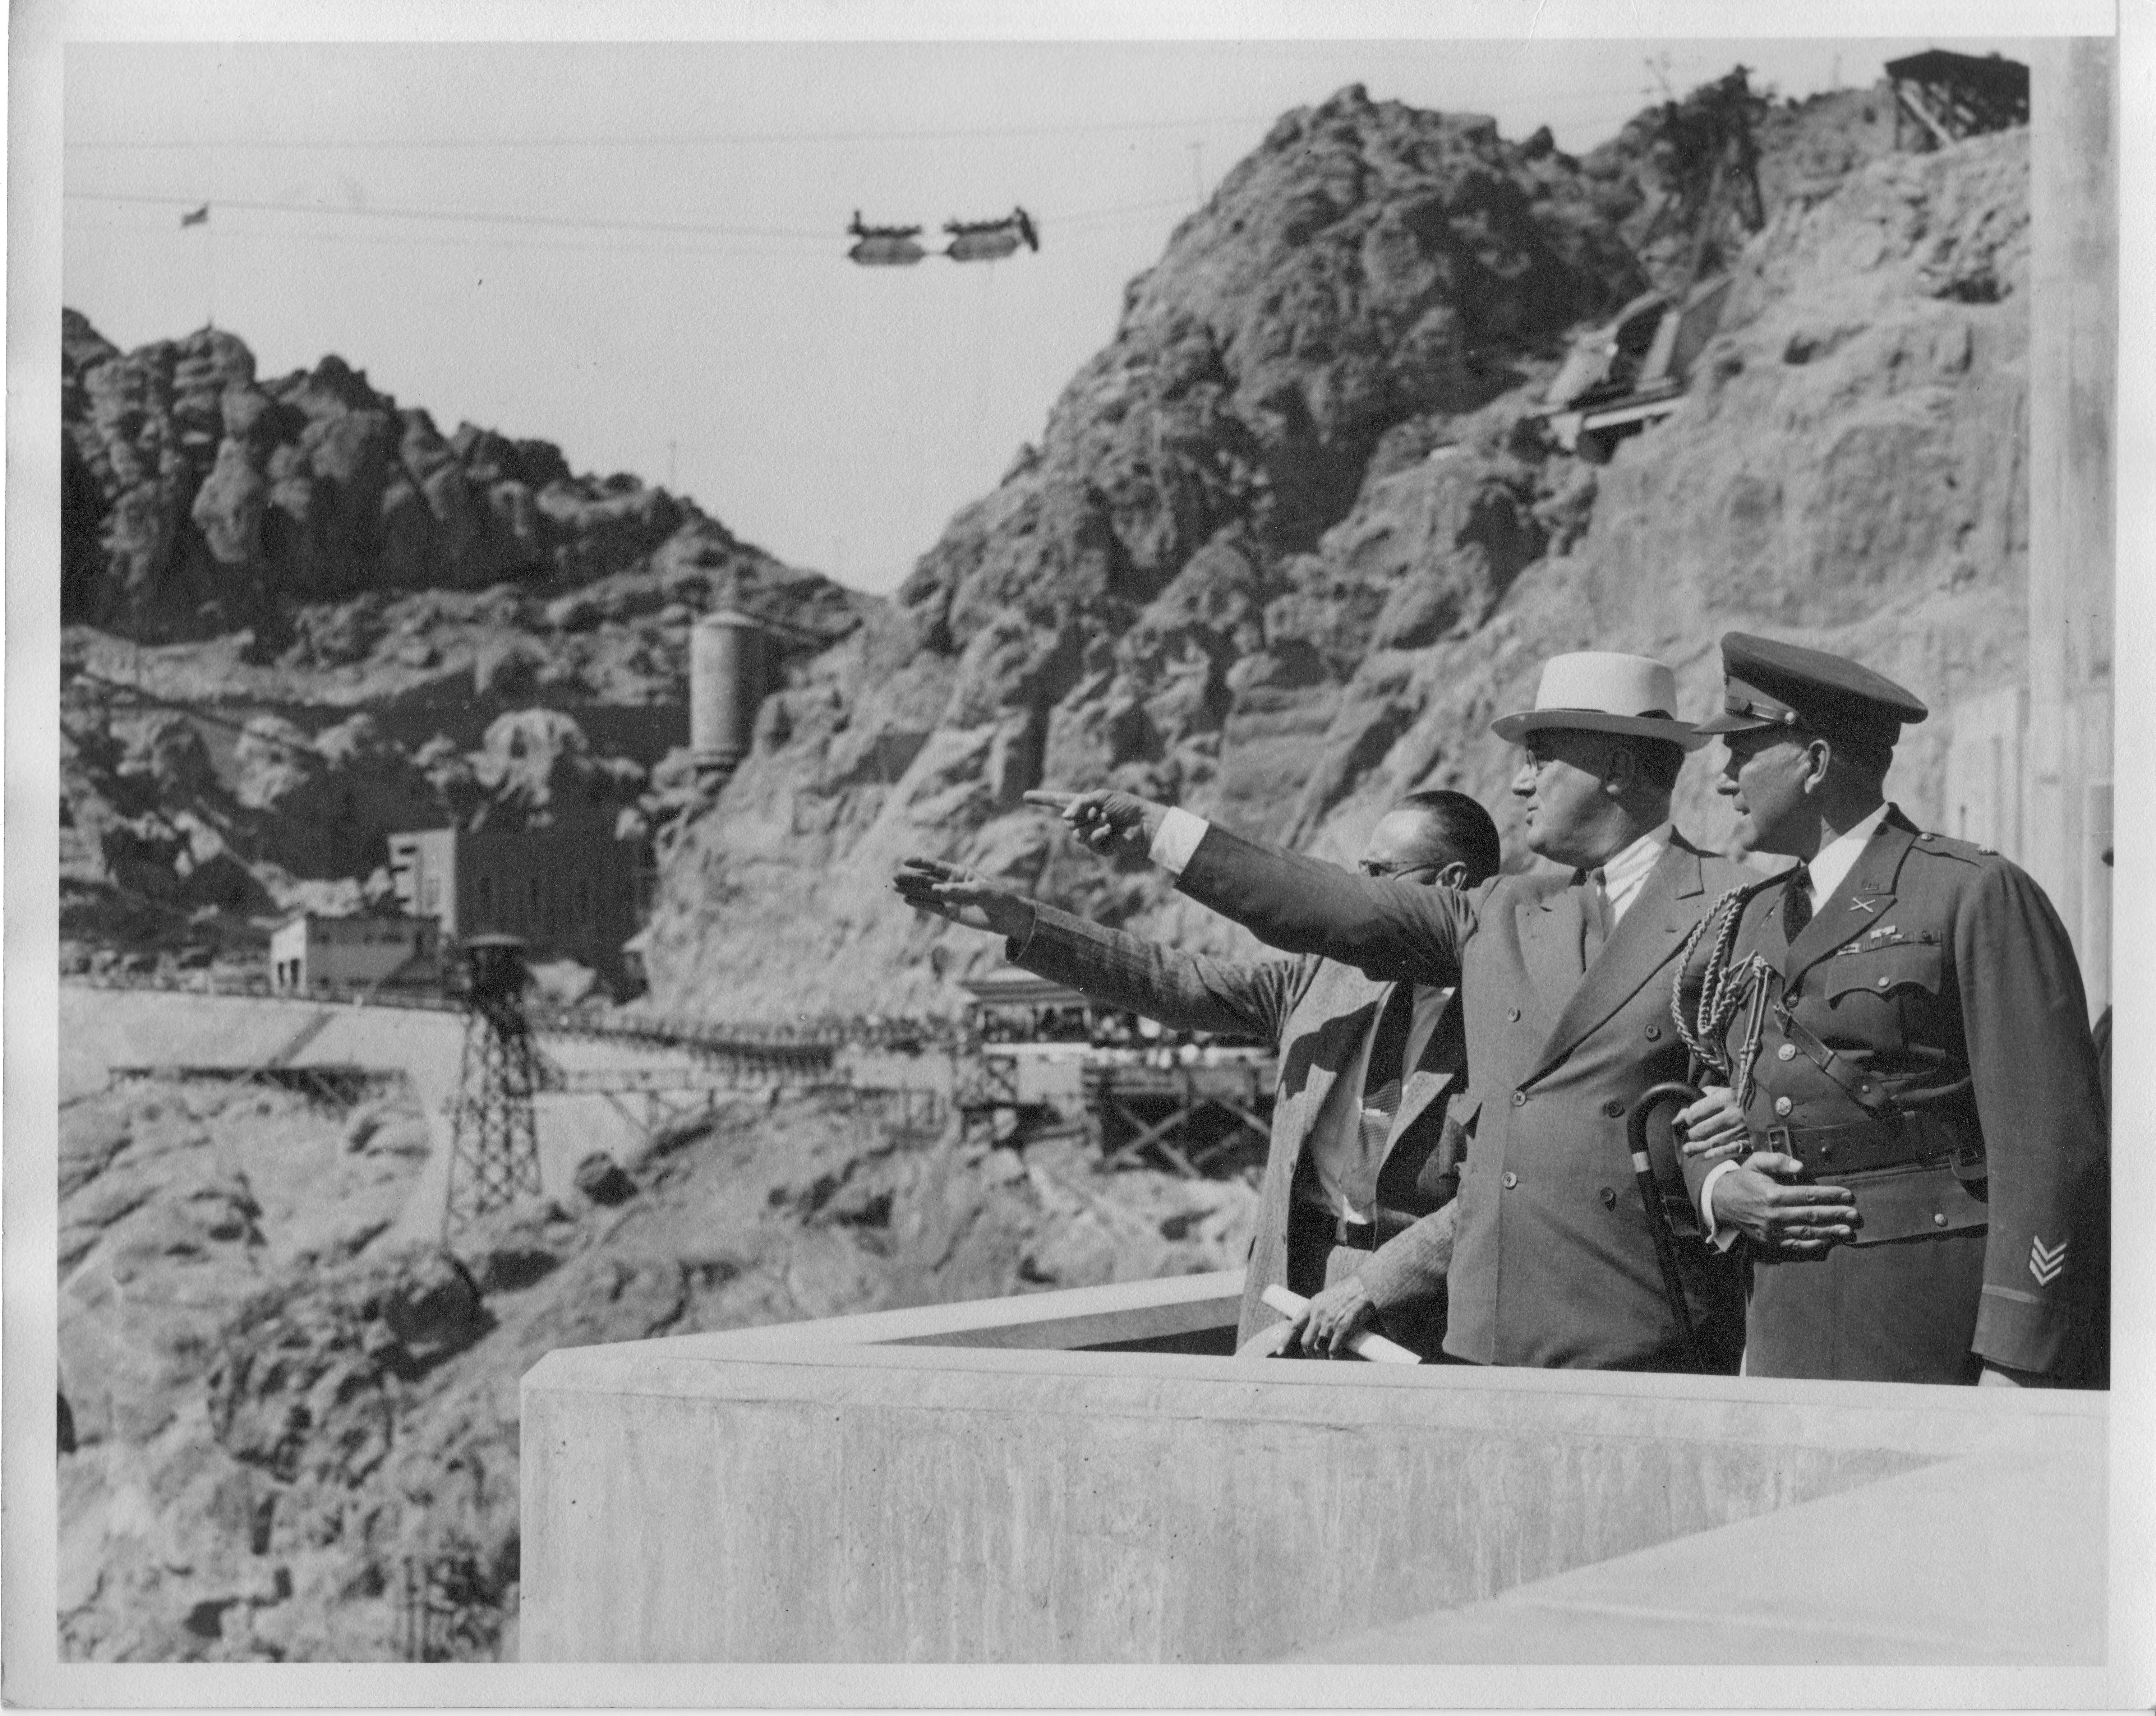 FDR at dedication of Boulder Dam, September 30, 1936